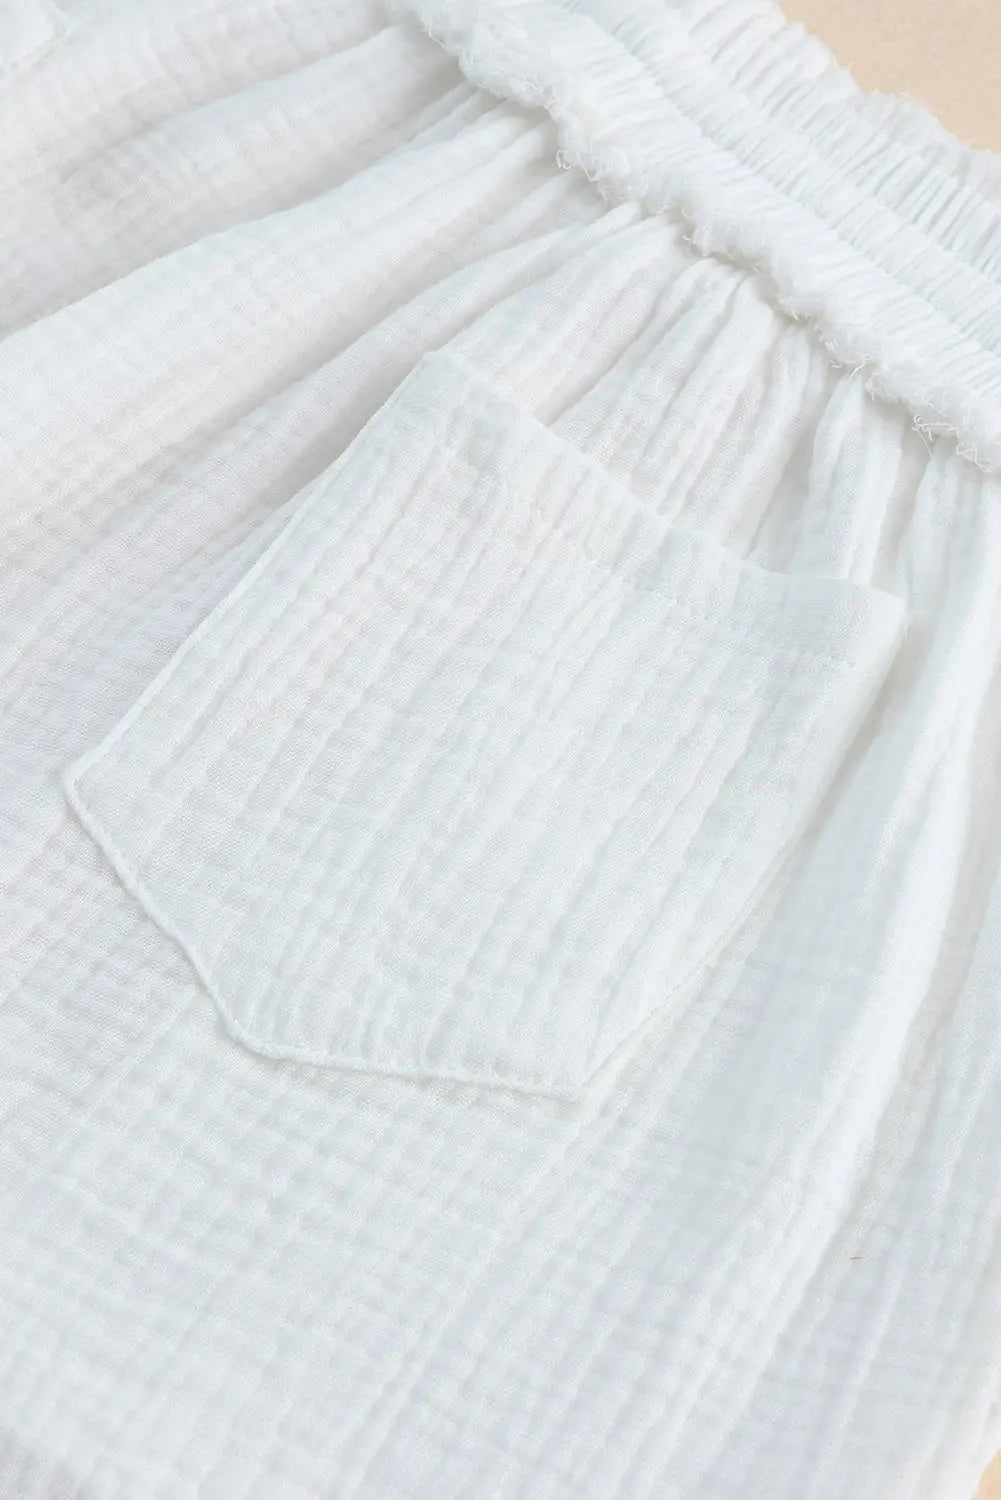 White relaxed v neck blouse and drawstring raw hem shorts set - loungewear